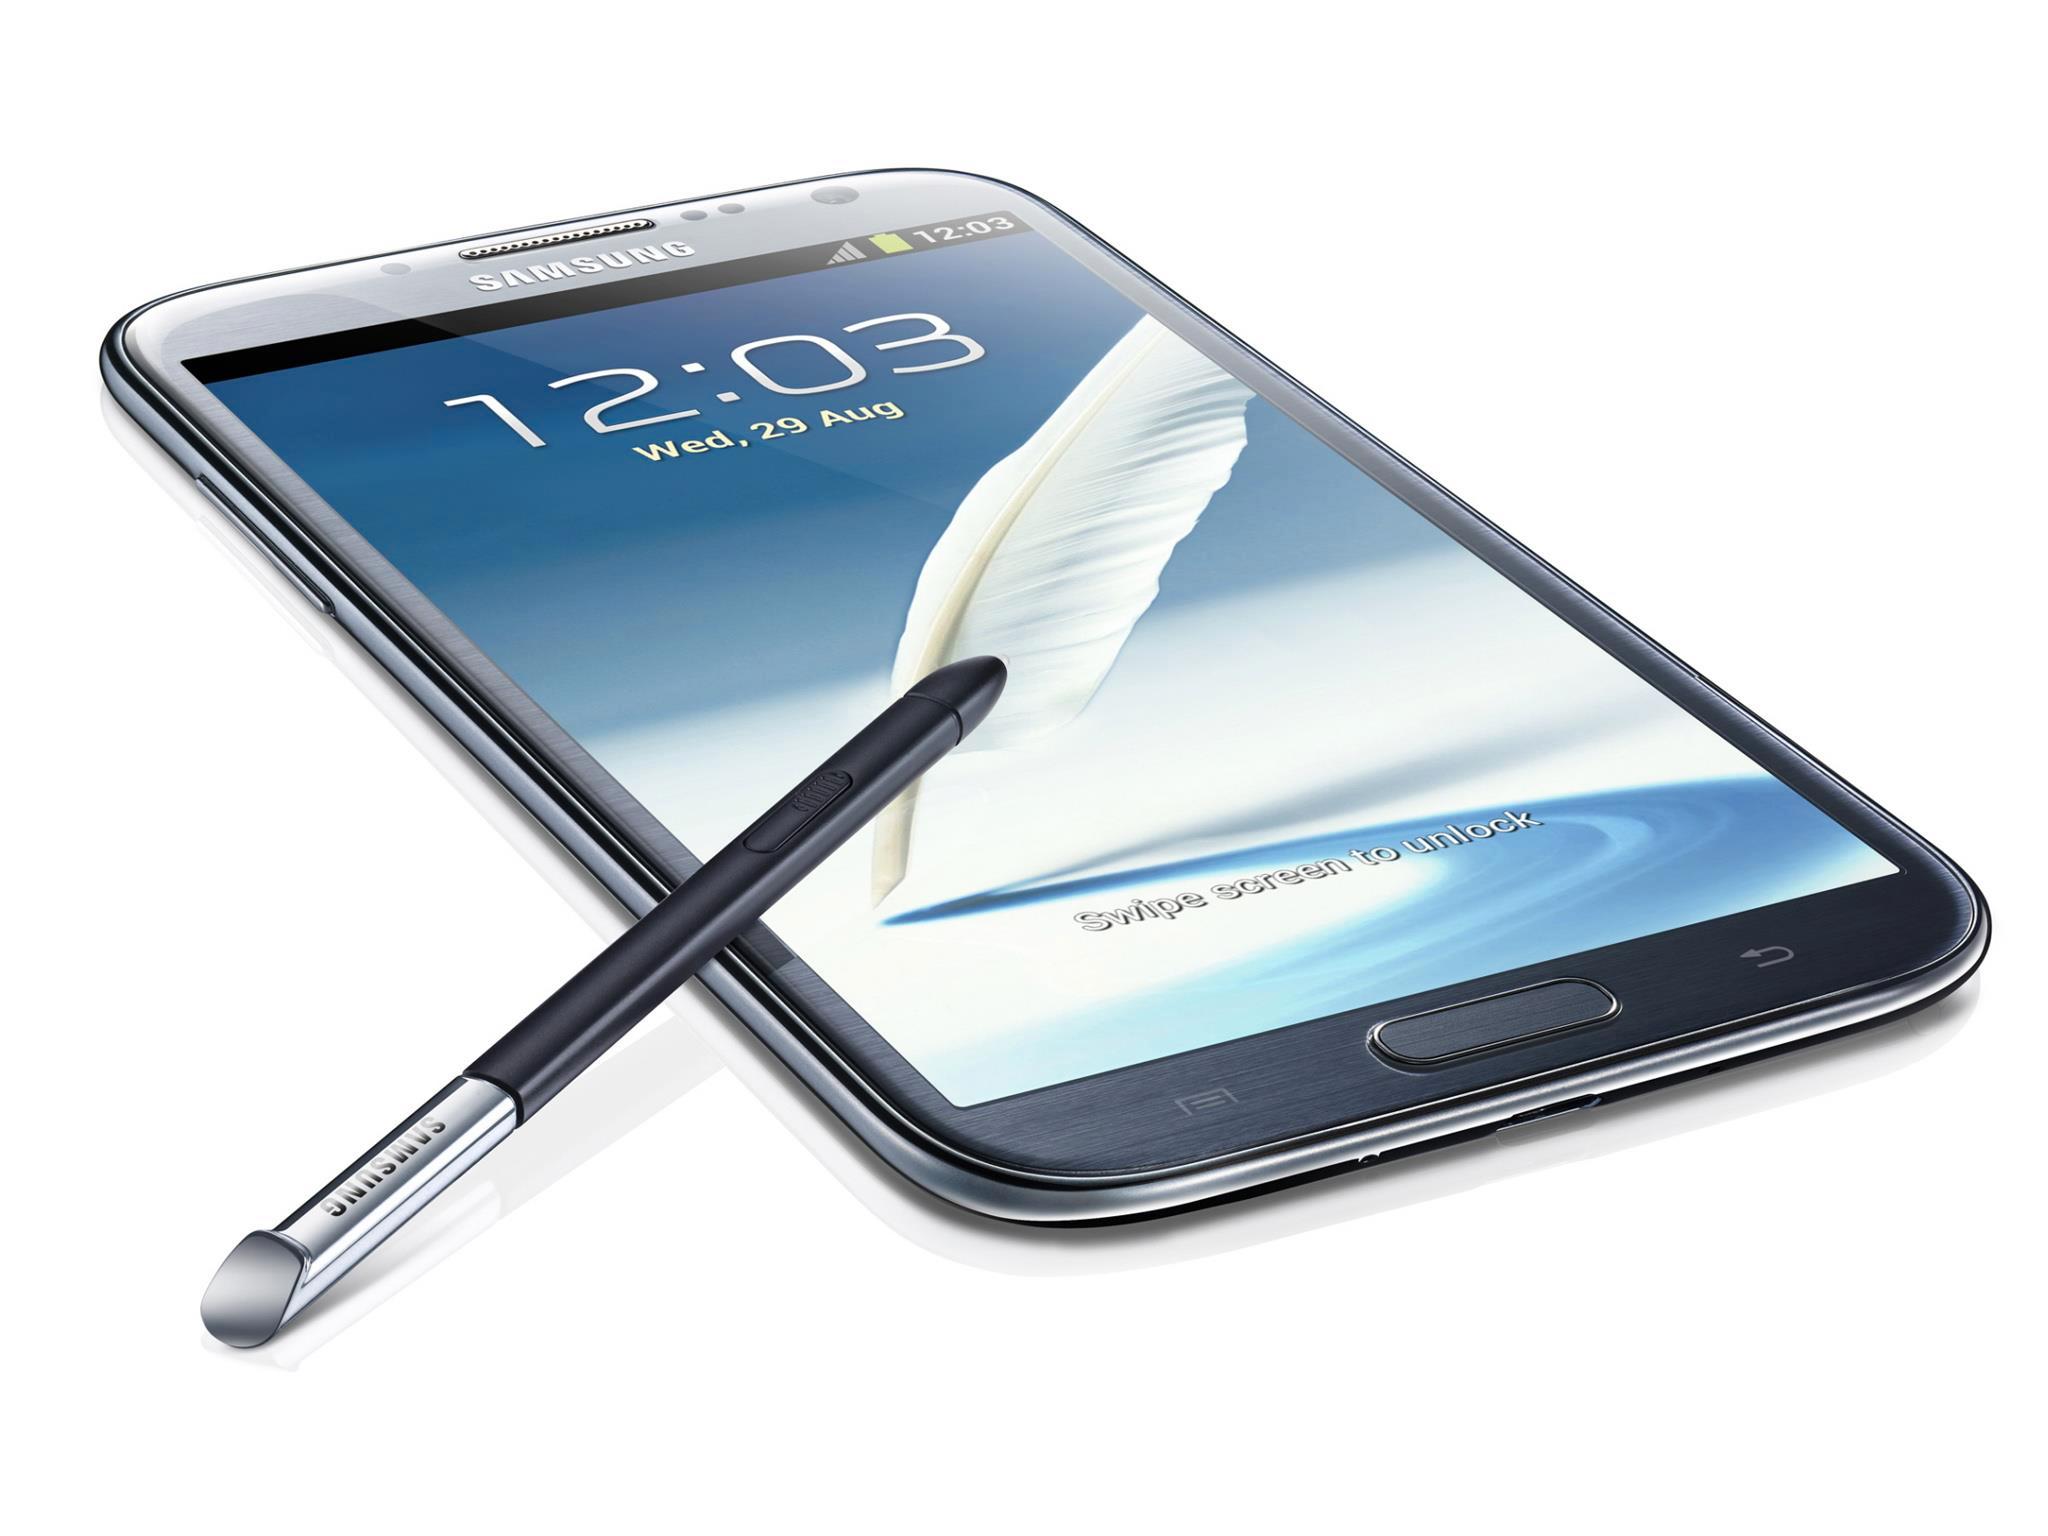 Store telefoner som Samsung Galaxy Note II vil få flere til å droppe kjøp av nettbrett, mener IDC.Foto: Samsung